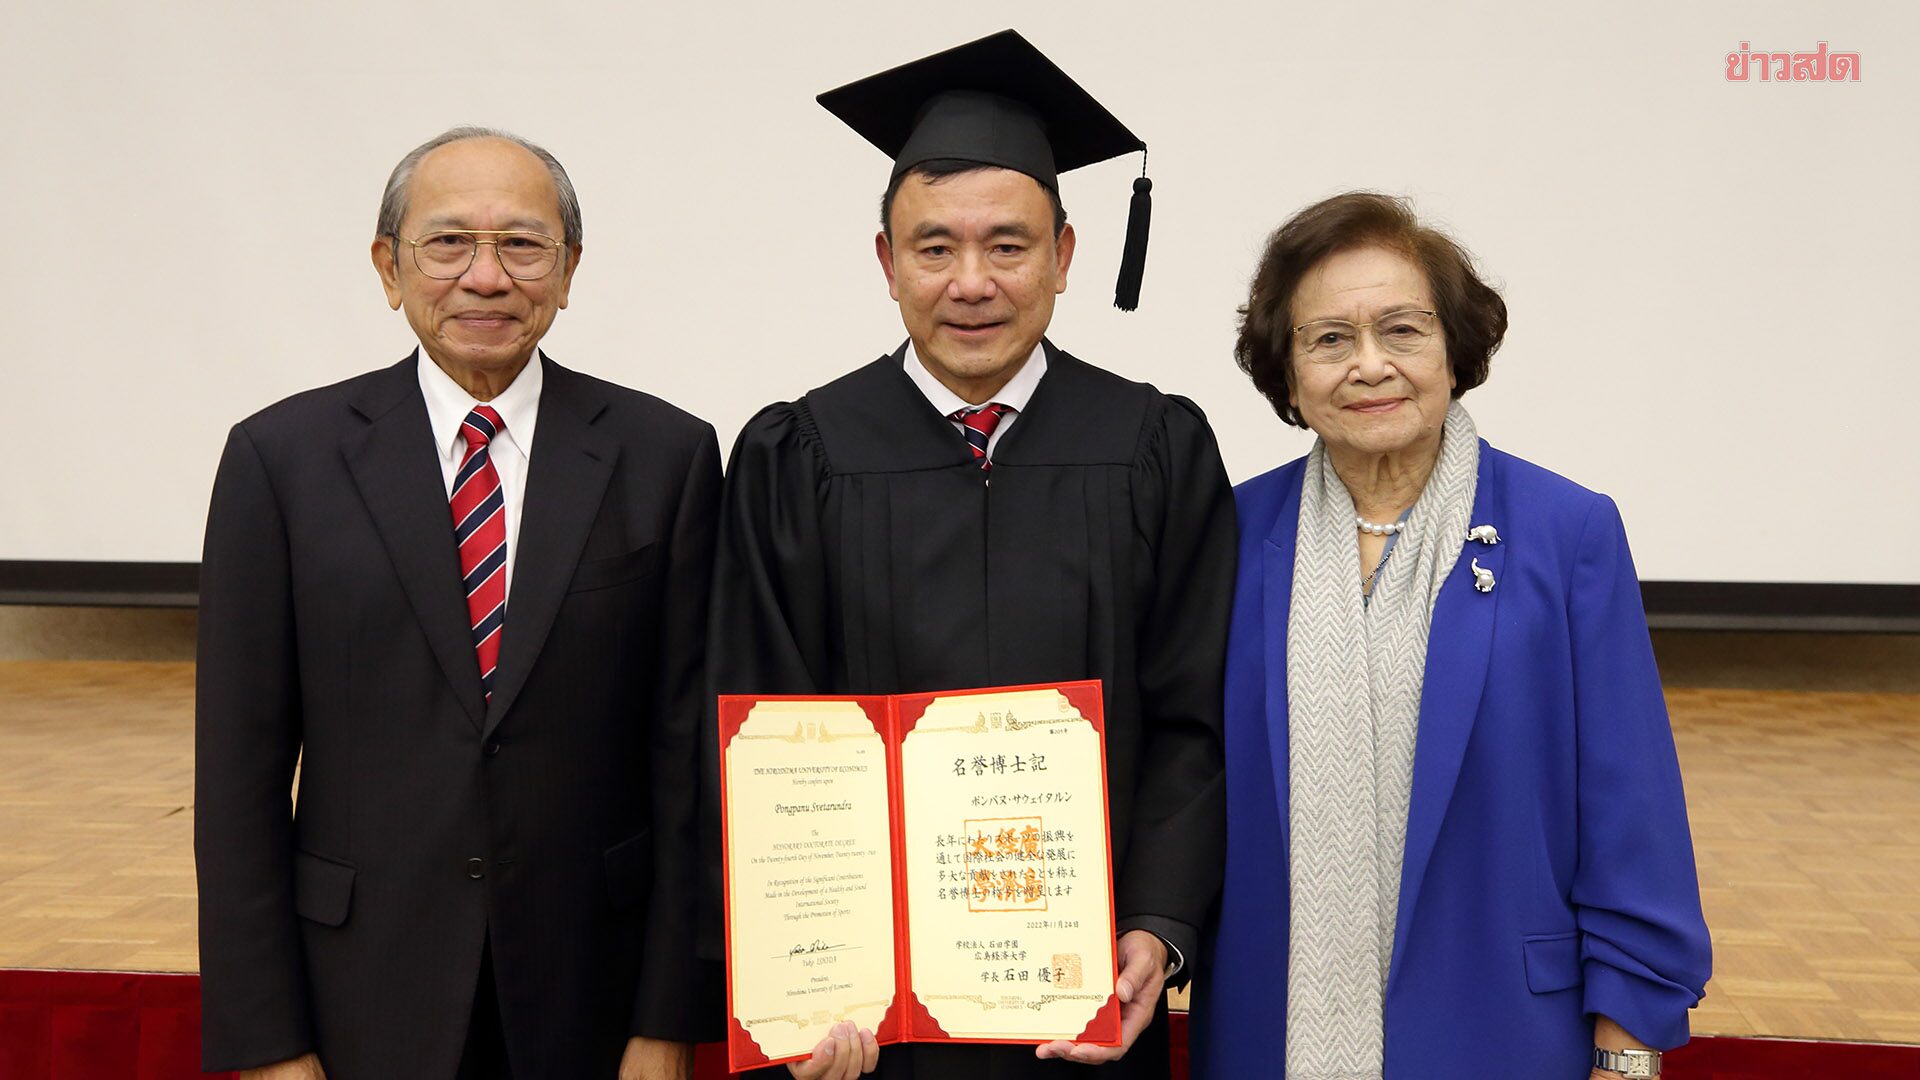 広島経済大学は元観光スポーツ省次官に卒業証書を授与した。